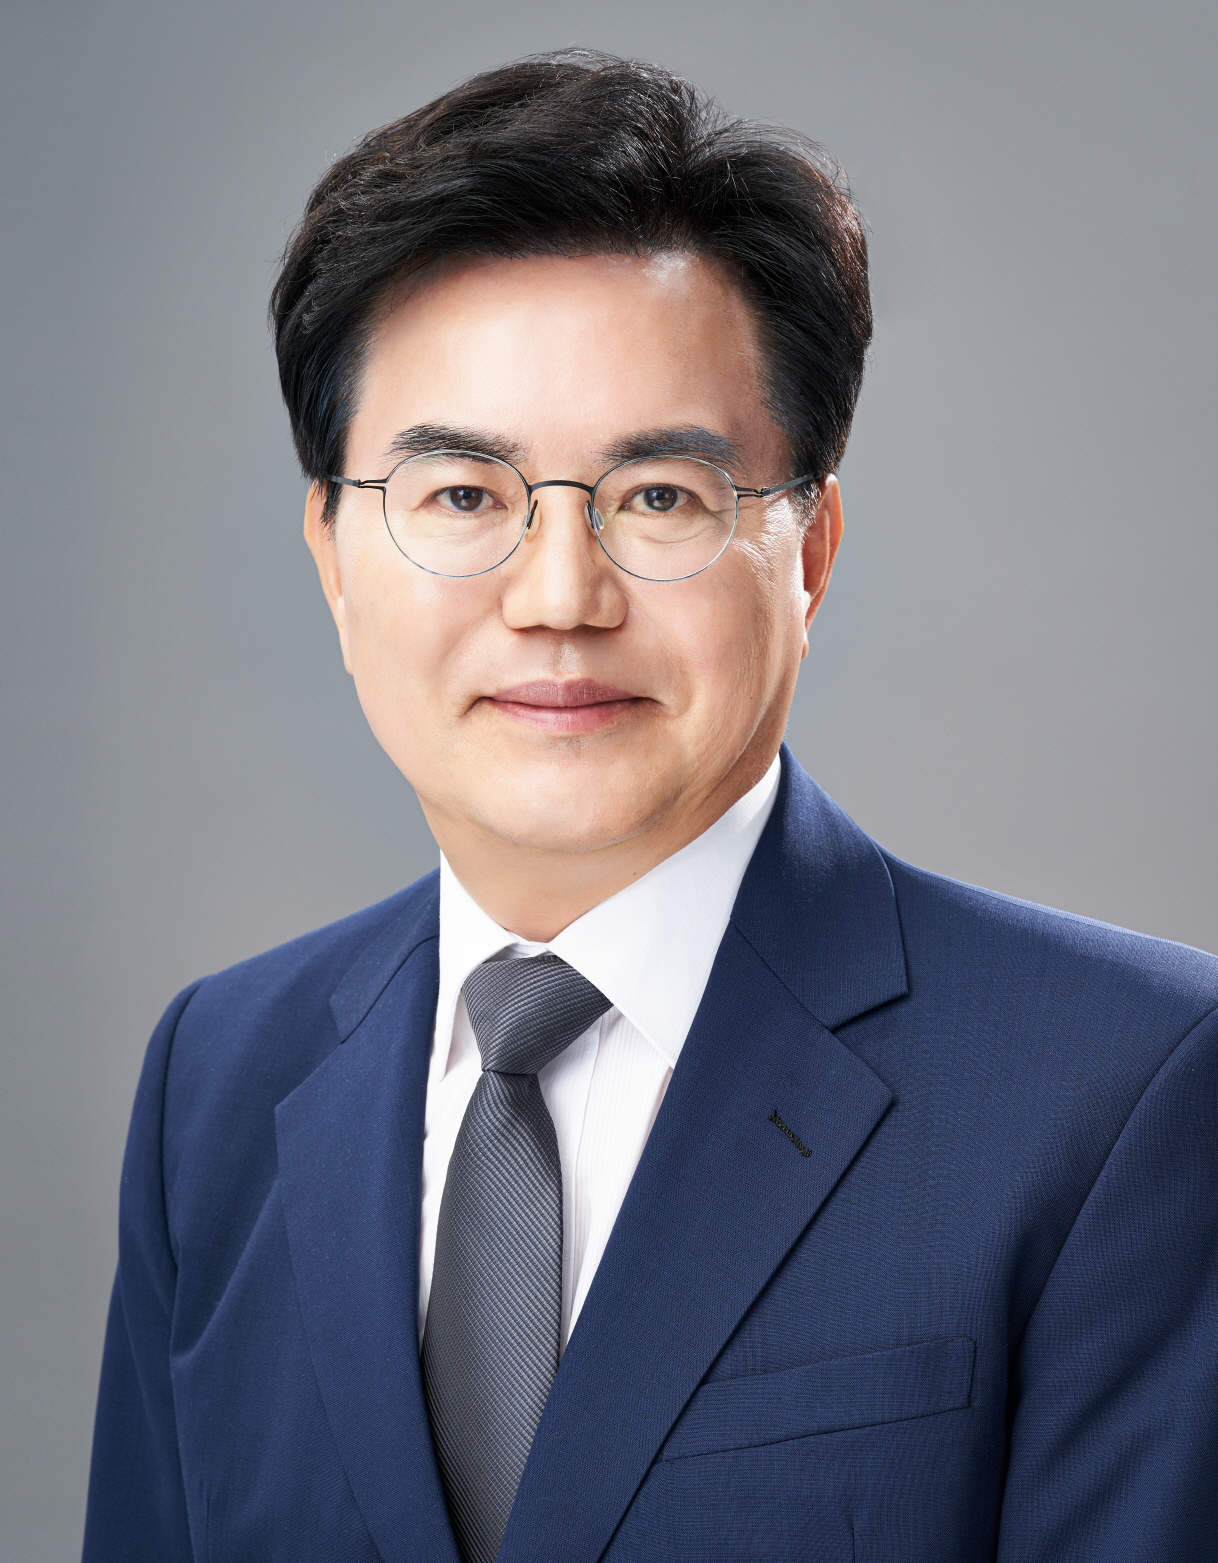 “Mantan Wakil Walikota Daegu Lee Sang-gil ditunjuk sebagai Presiden EXCO… Diresmikan pada 1 September” – The Herald Business